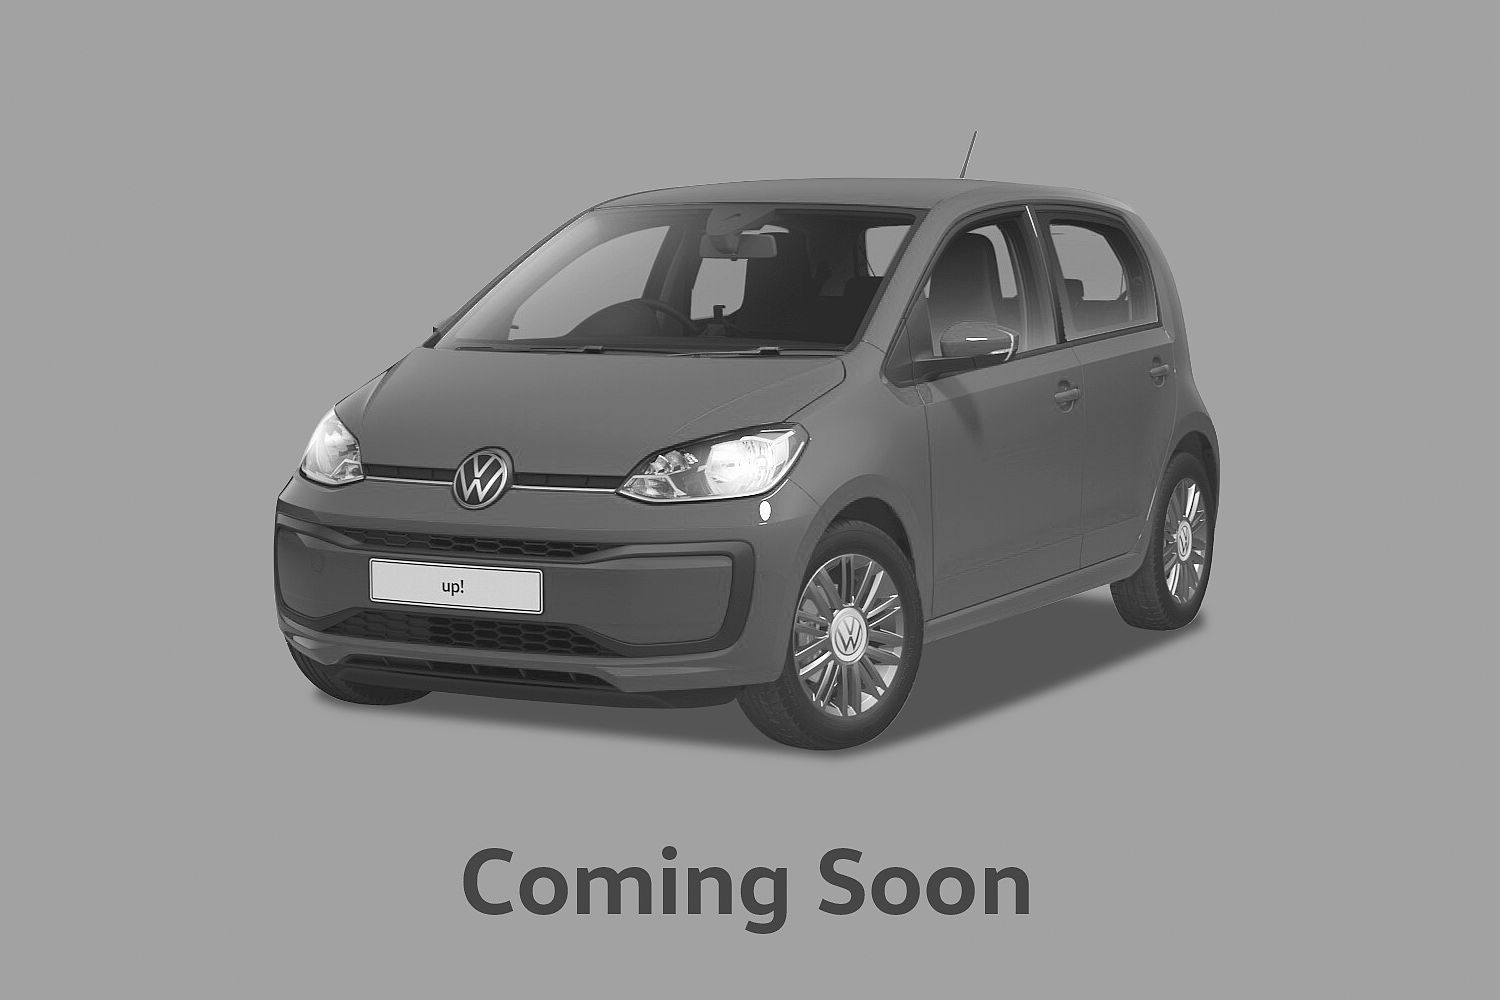 Volkswagen up! Mark 1 Facelift 2 3Dr 2020 1.0 (115ps) GTI